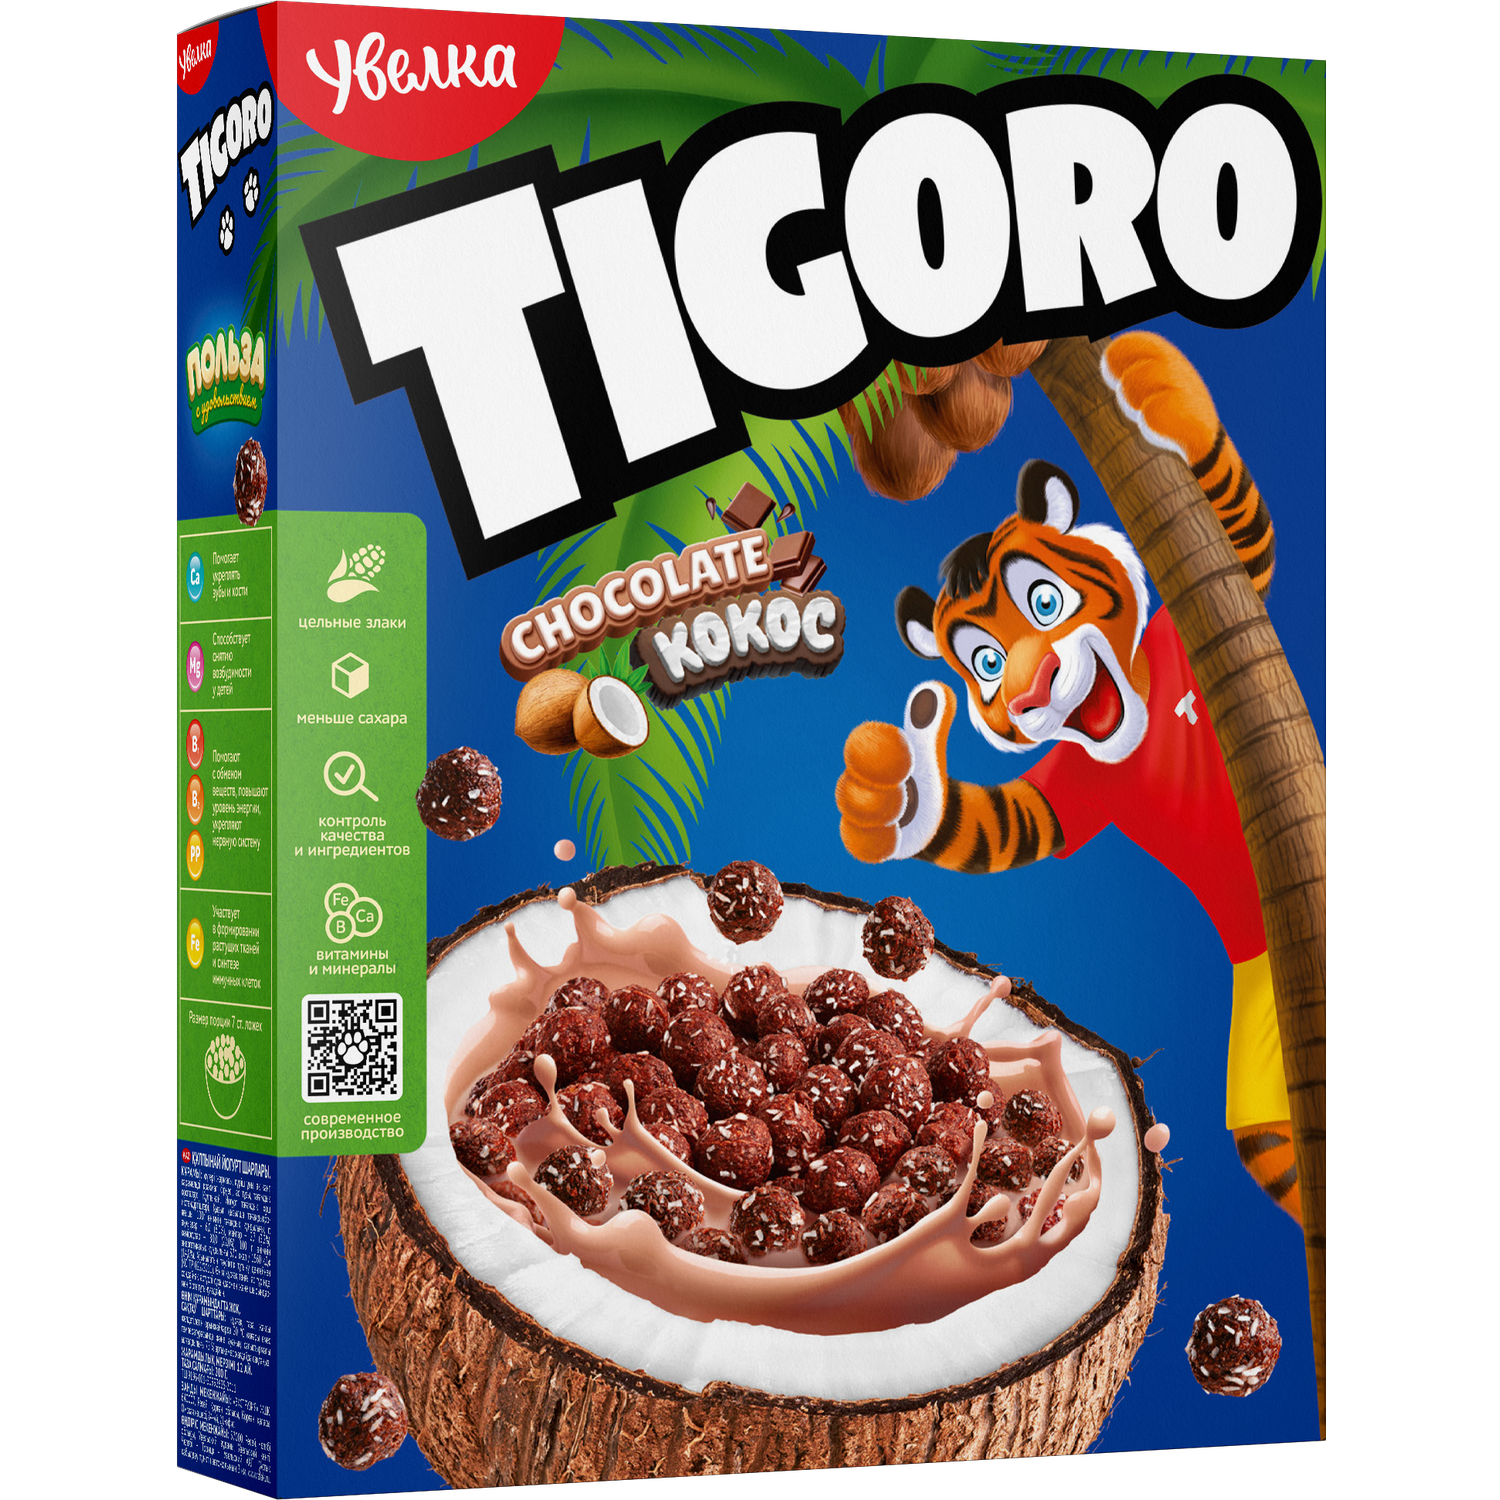 Сухой завтрак Шарики Тигоро Увелка со вкусом шоколада в кокосовой стружке из натуральных ингредиентов 200 г - фото 1